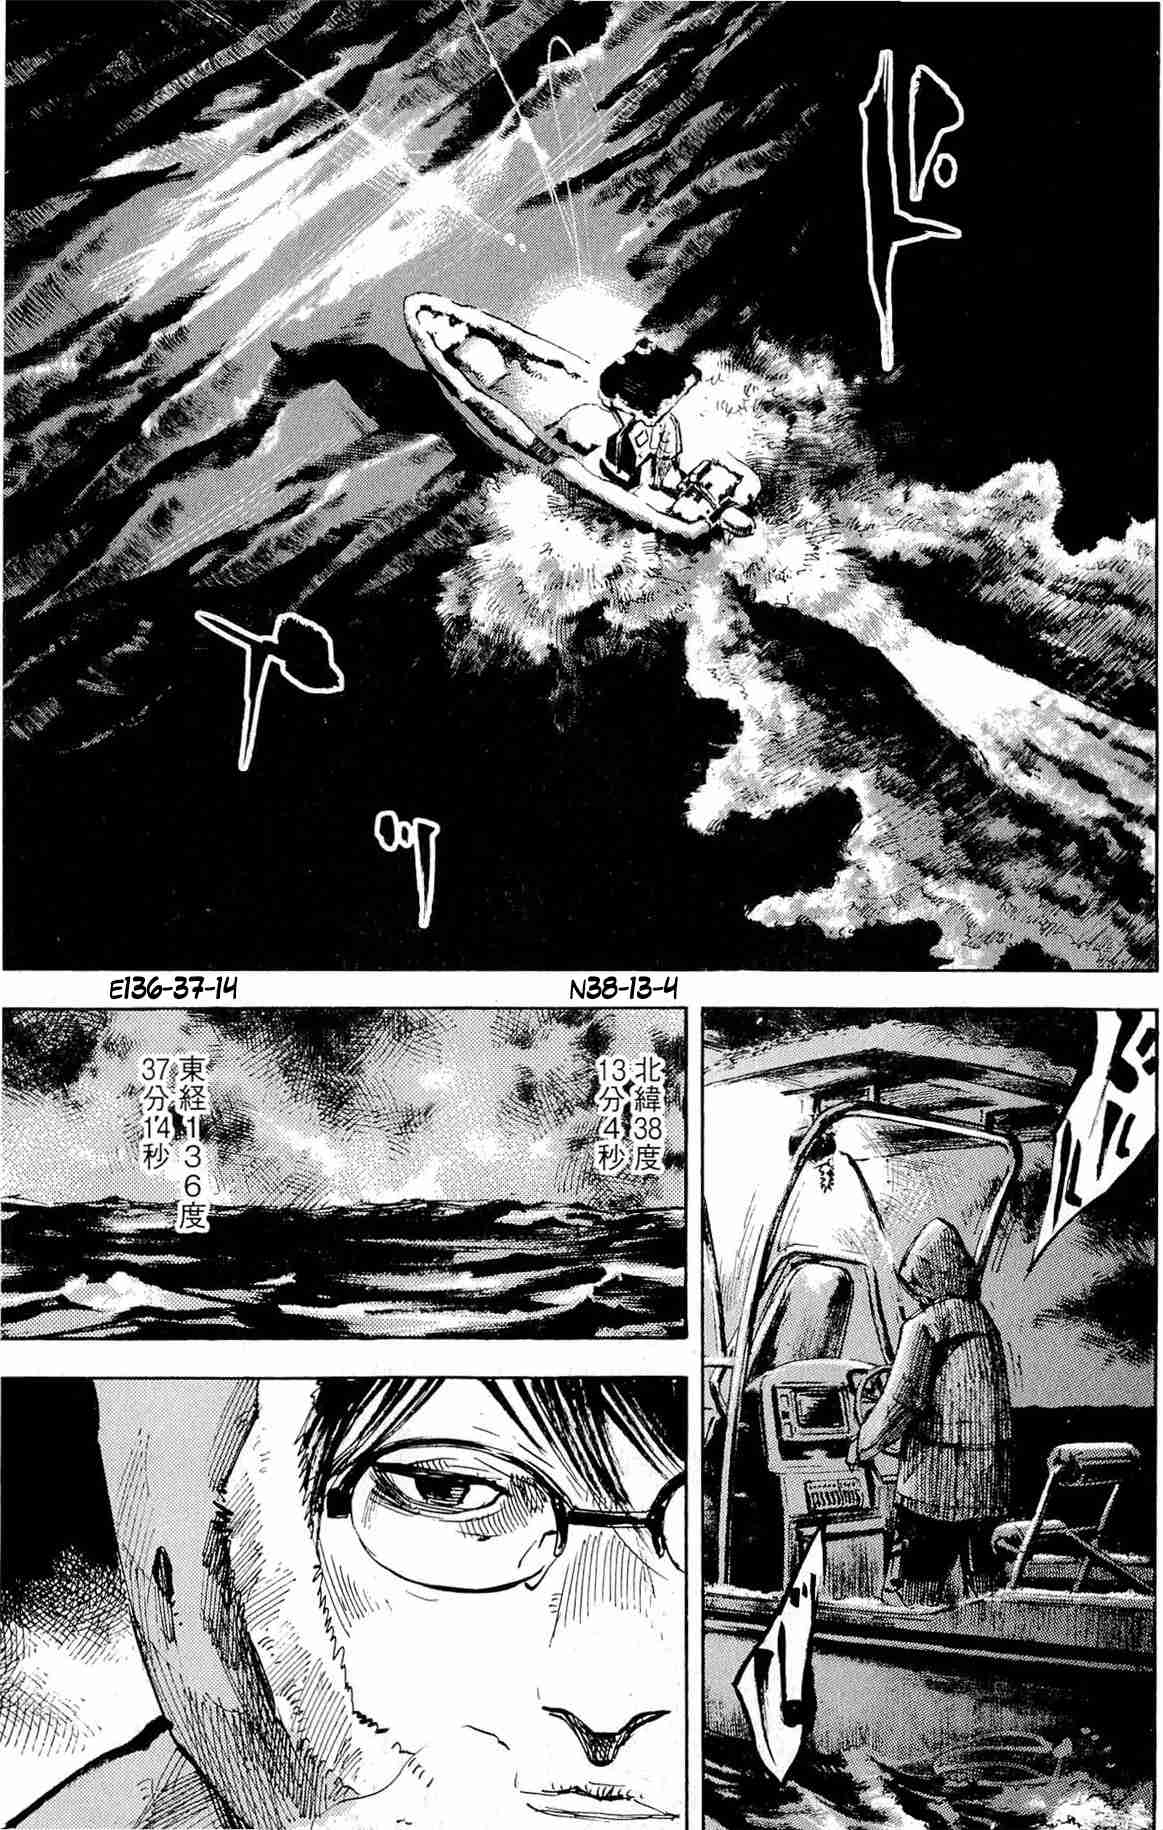 Jiraishin Diablo Vol. 2 Ch. 9 The Lost Island / Part 9 "Access"